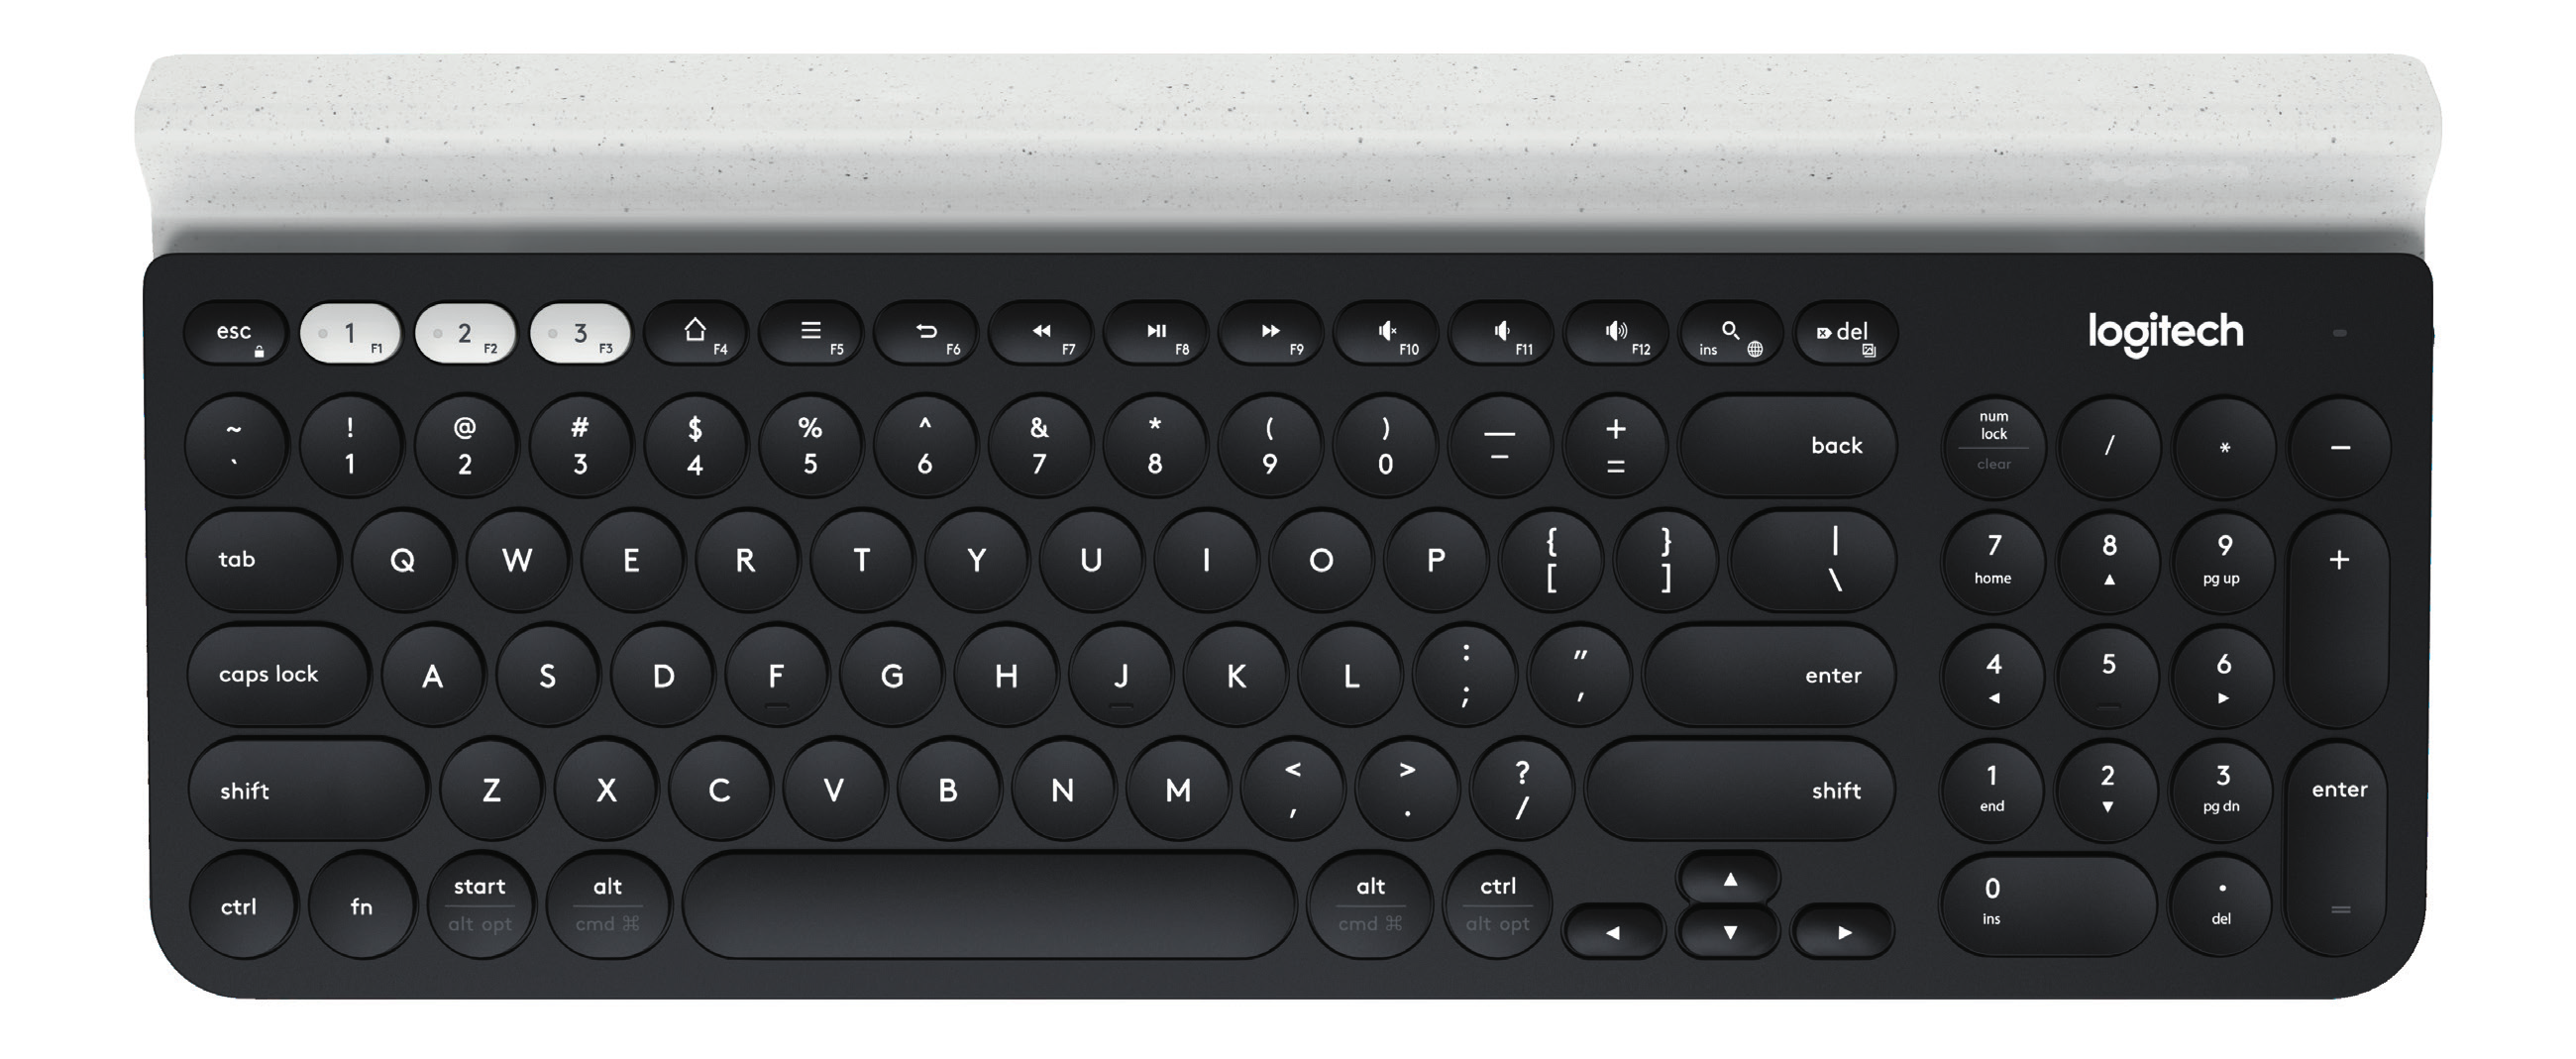 ANSLUT DIG K780 Multi-Device-tangentbordet ger dig möjligheten att ansluta upp till tre enheter, antingen via Bluetooth Smart eller via den förkopplade Unifying USB-mottagaren*.